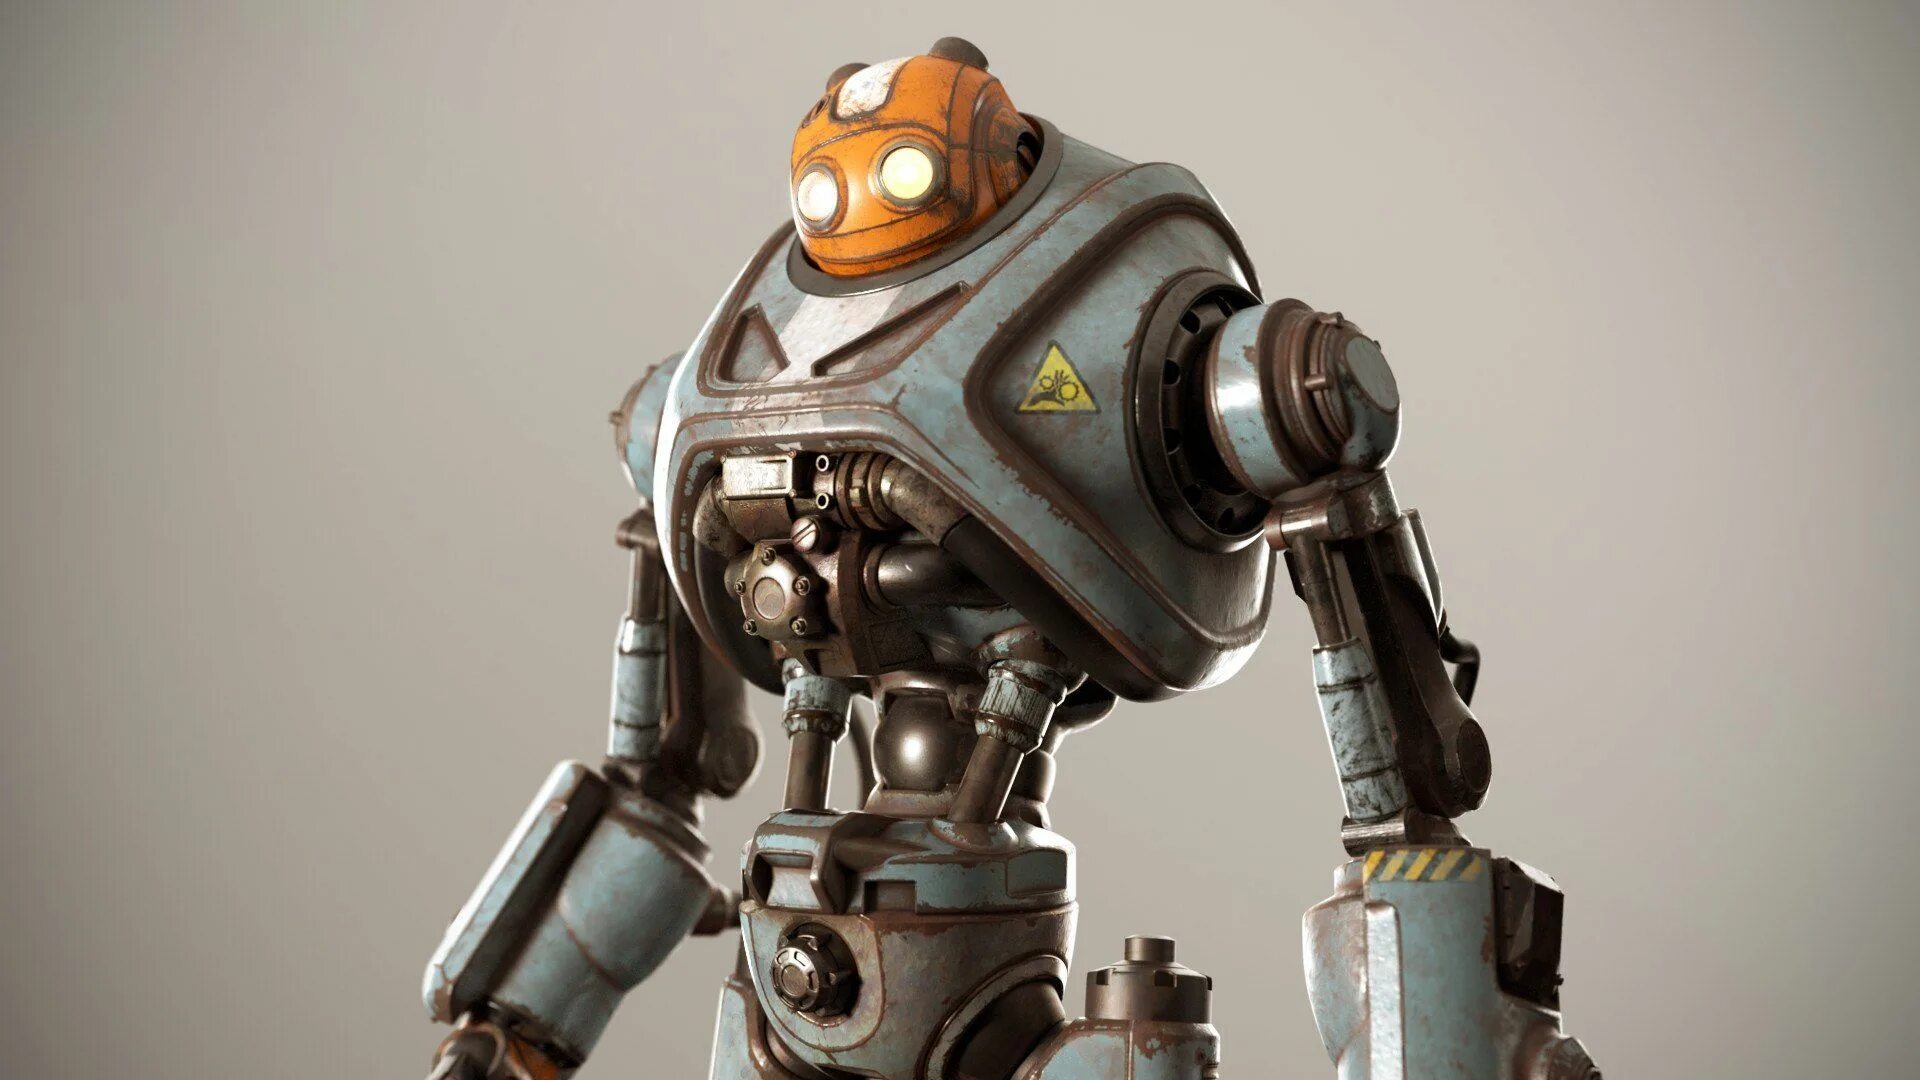 Robots out. 3ds Max Steampunk робот. Арт стимпанк робот шахтёр. Гигантский робот. Роботы третьего поколения.